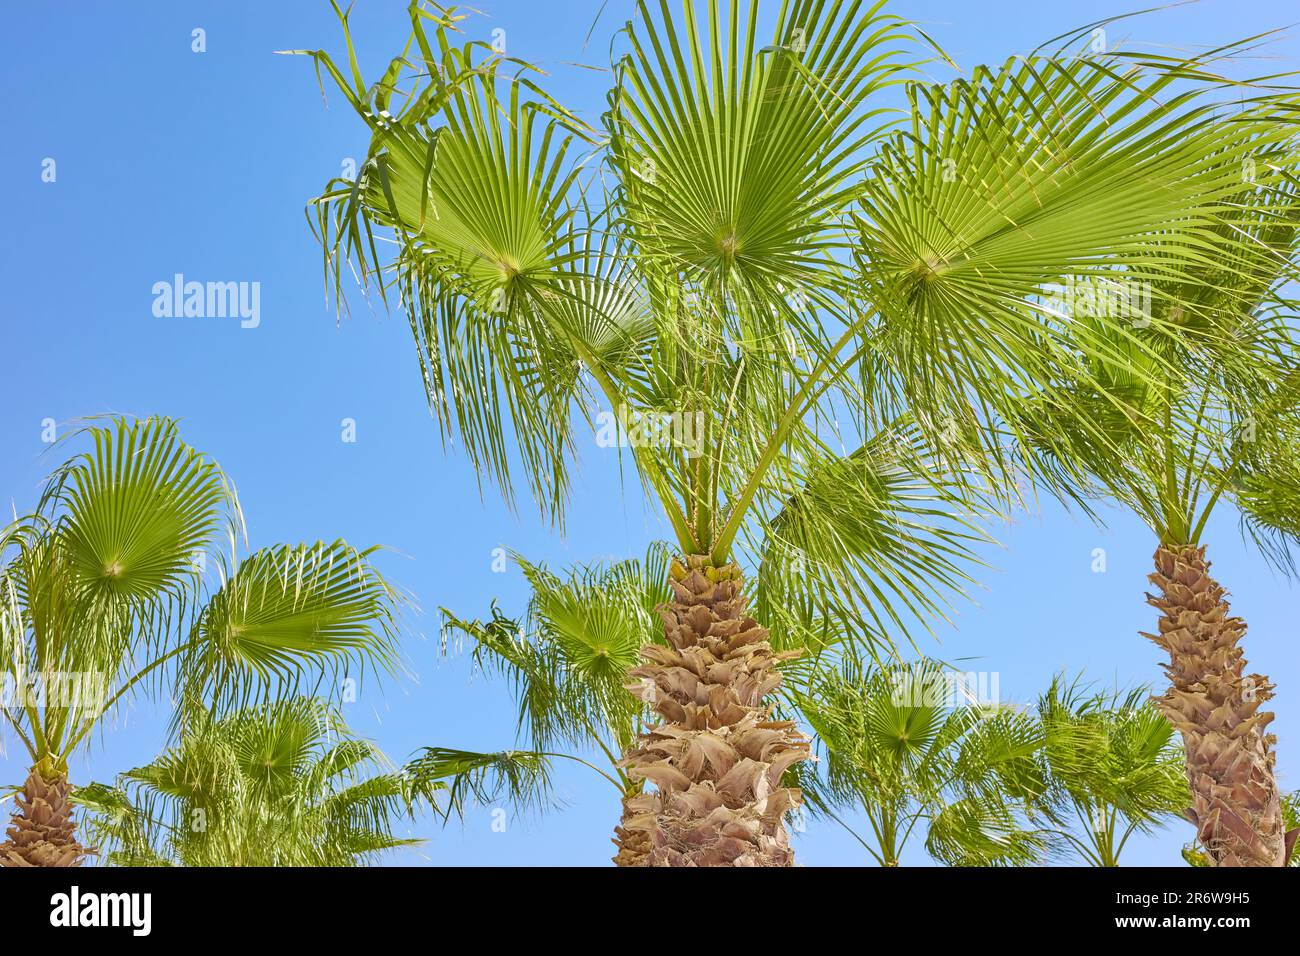 Immagine di palme contro il cielo blu. Foto Stock